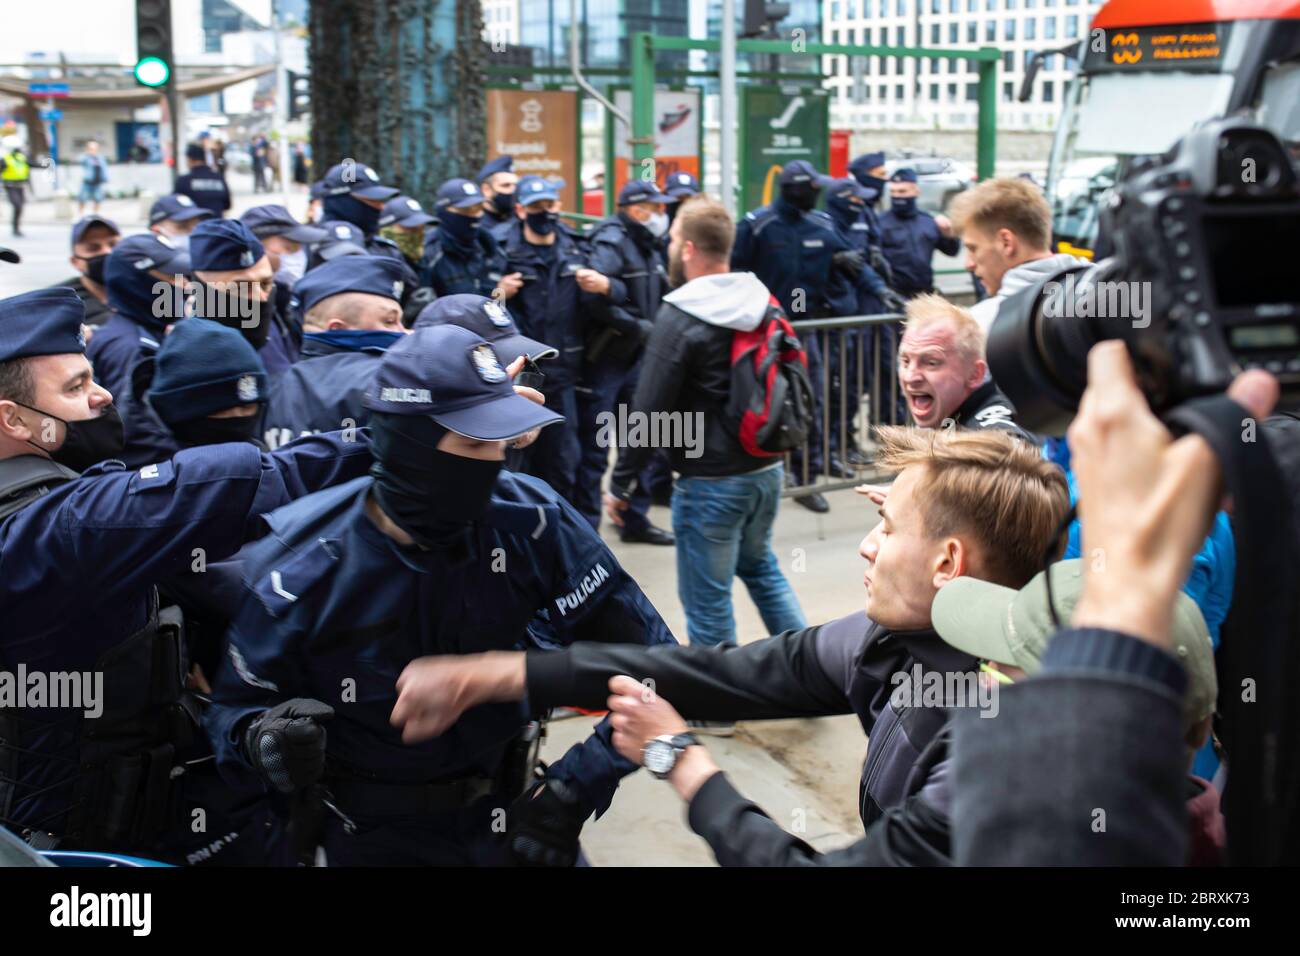 Varsovie / Pologne - 05.16.2020: Manifestation 'Trajk Przedsiebiorcow' (grève des entrepreneurs) personnes manifestant contre le gouvernement. Police anti-émeute. Banque D'Images